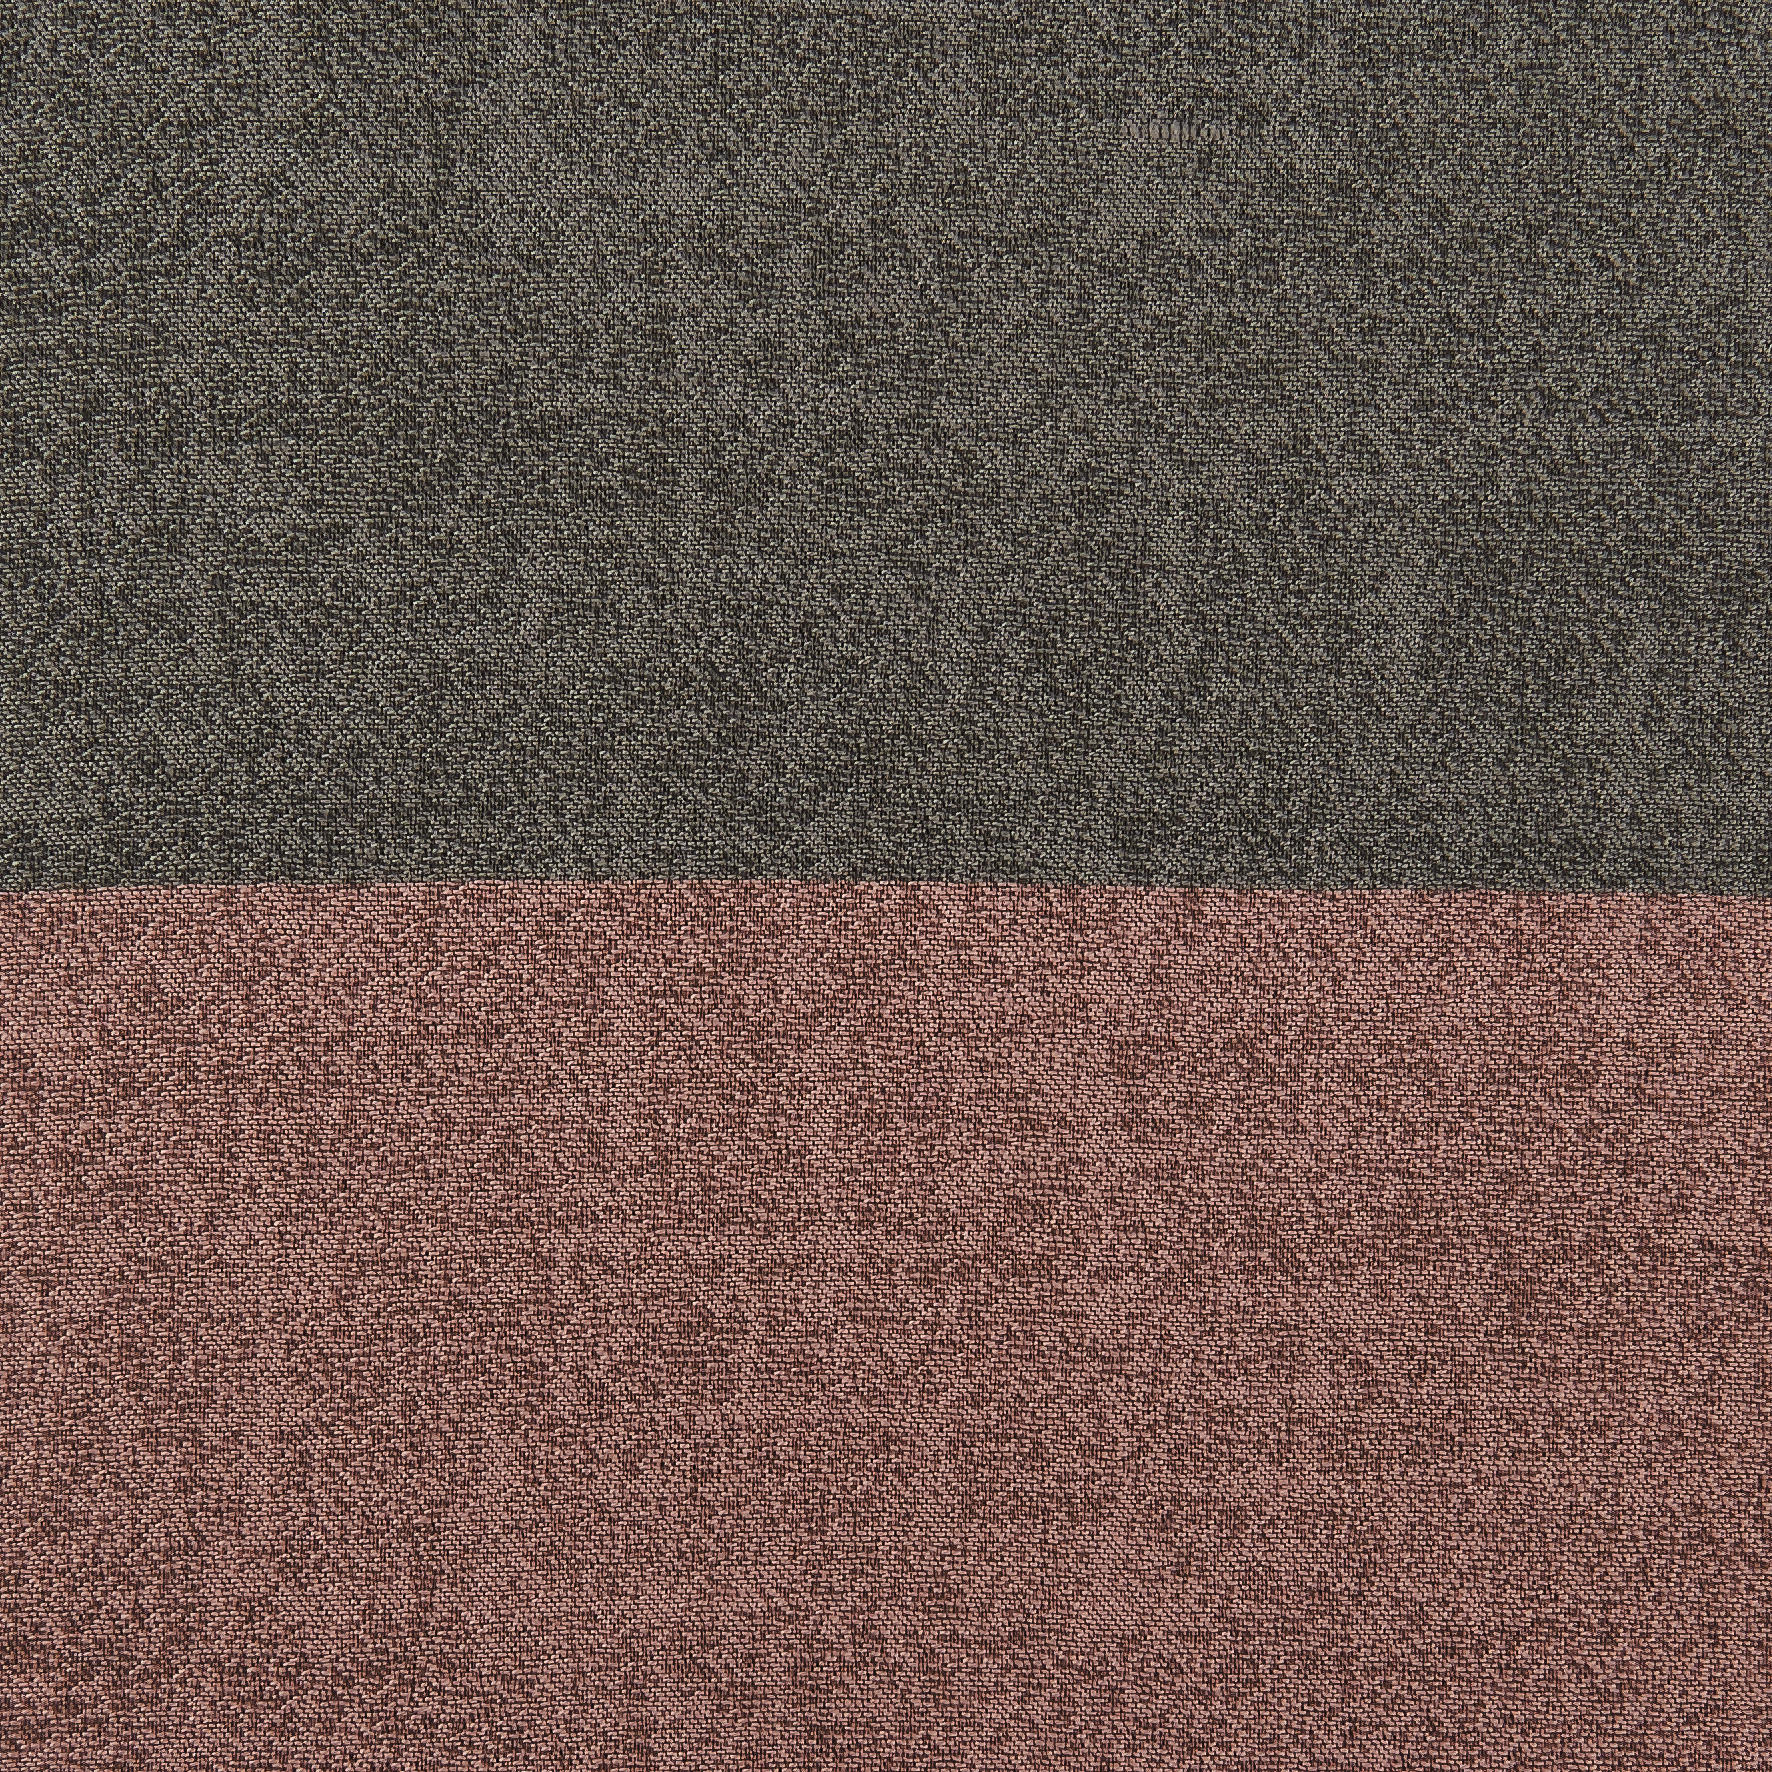 Ösenvorhang Maxima Silber B/l: Ca. 140x245 Cm Maxima - rosé/silber (140,00/245,00cm)